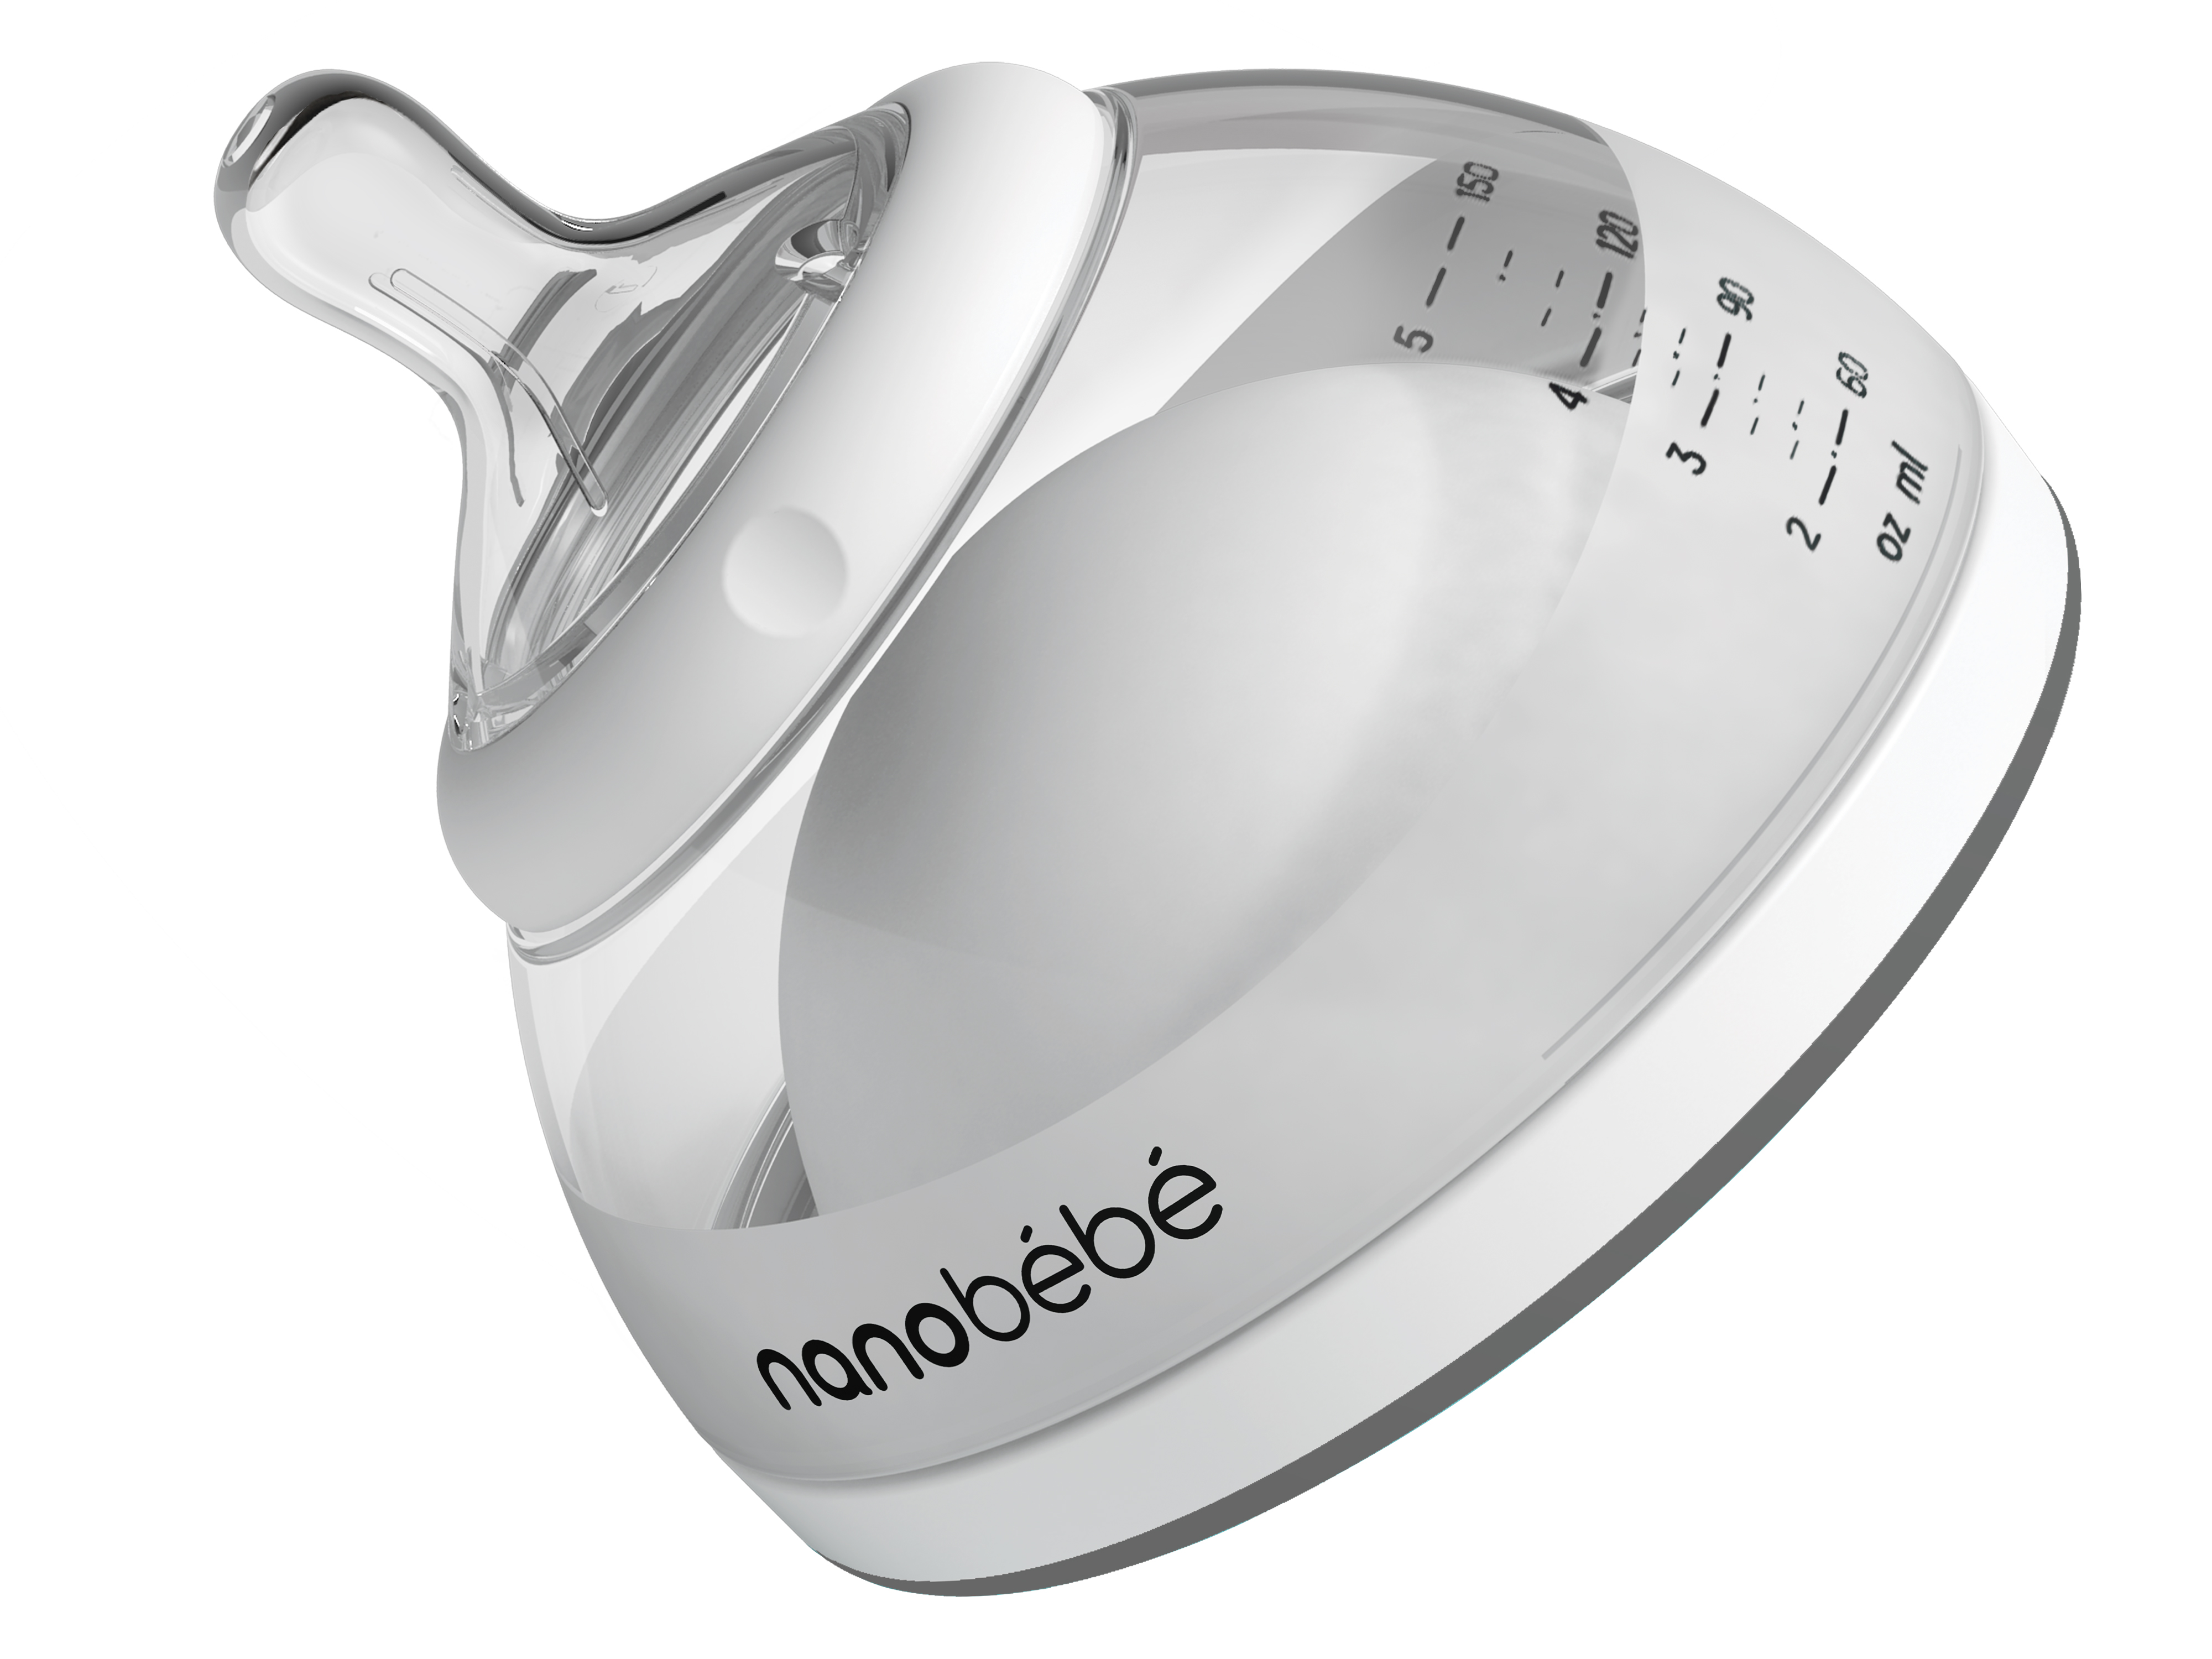 Nanobébé Tåteflaske for Morsmelk, Grå, 150 ml, 1 stk.